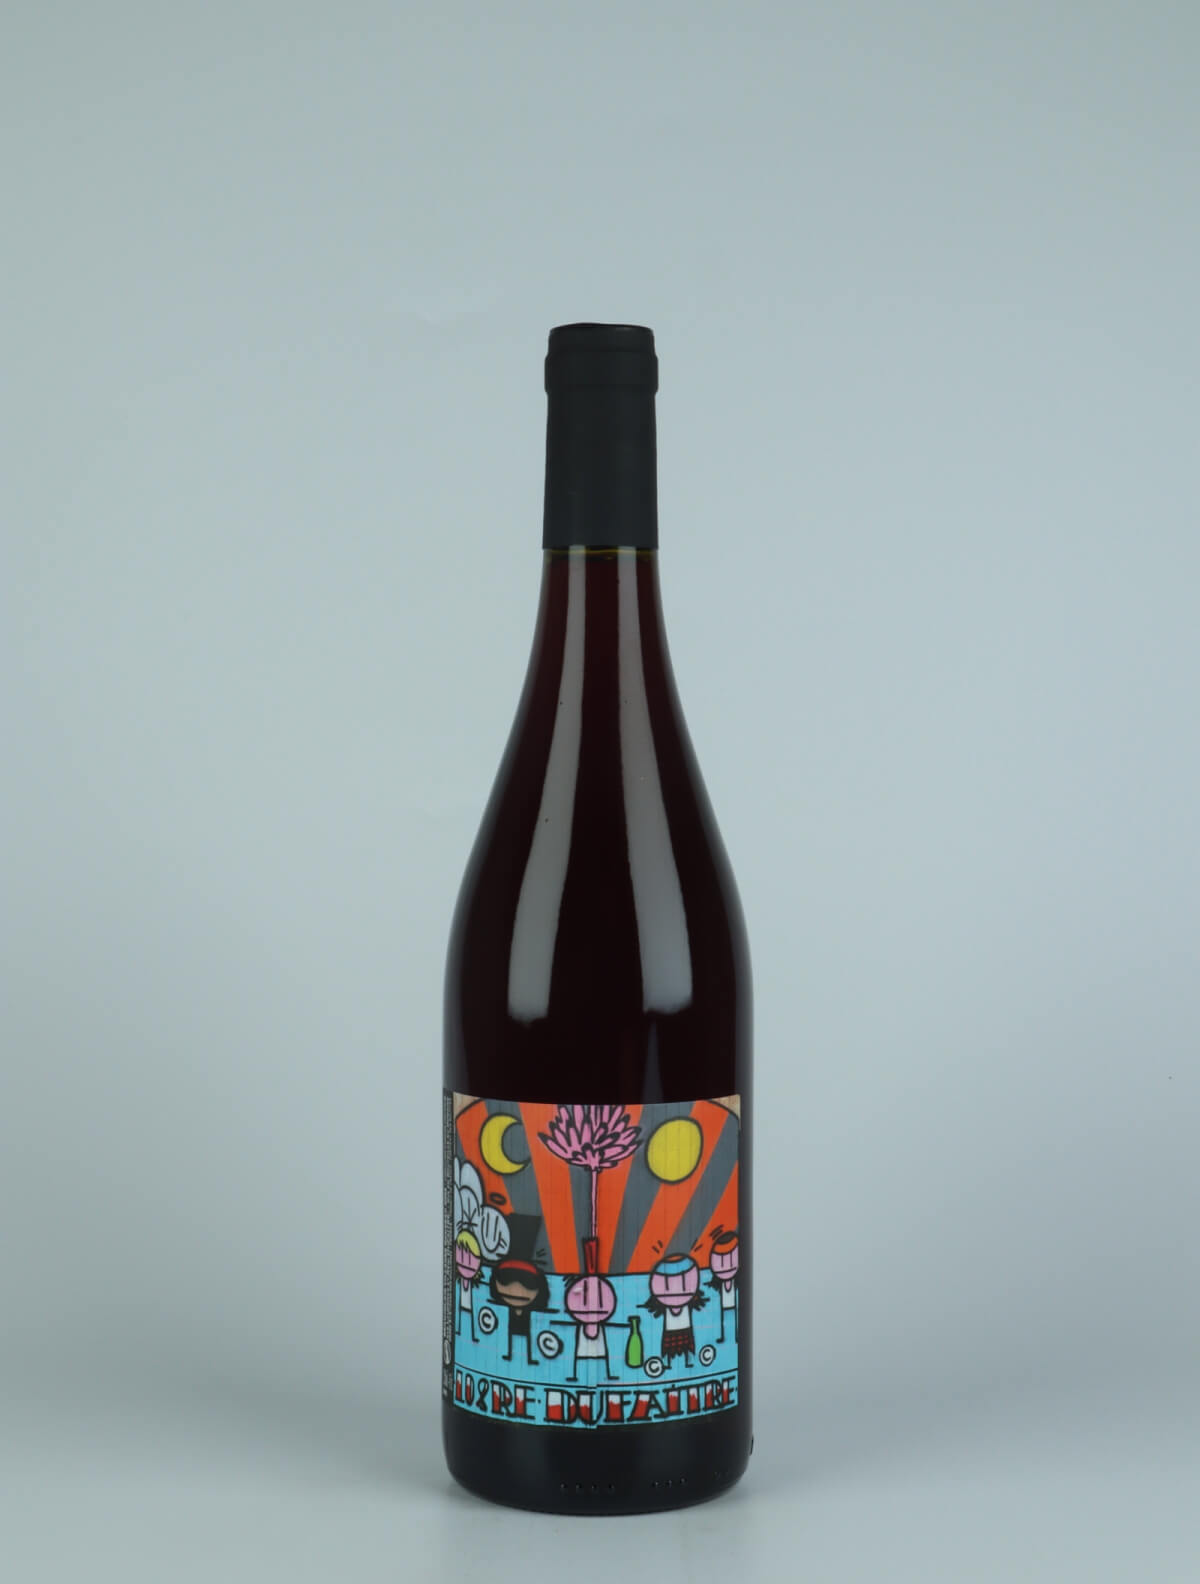 A bottle 2022 Beaujolais Villages Nouveau Red wine from Laurence & Rémi Dufaitre, Beaujolais in France